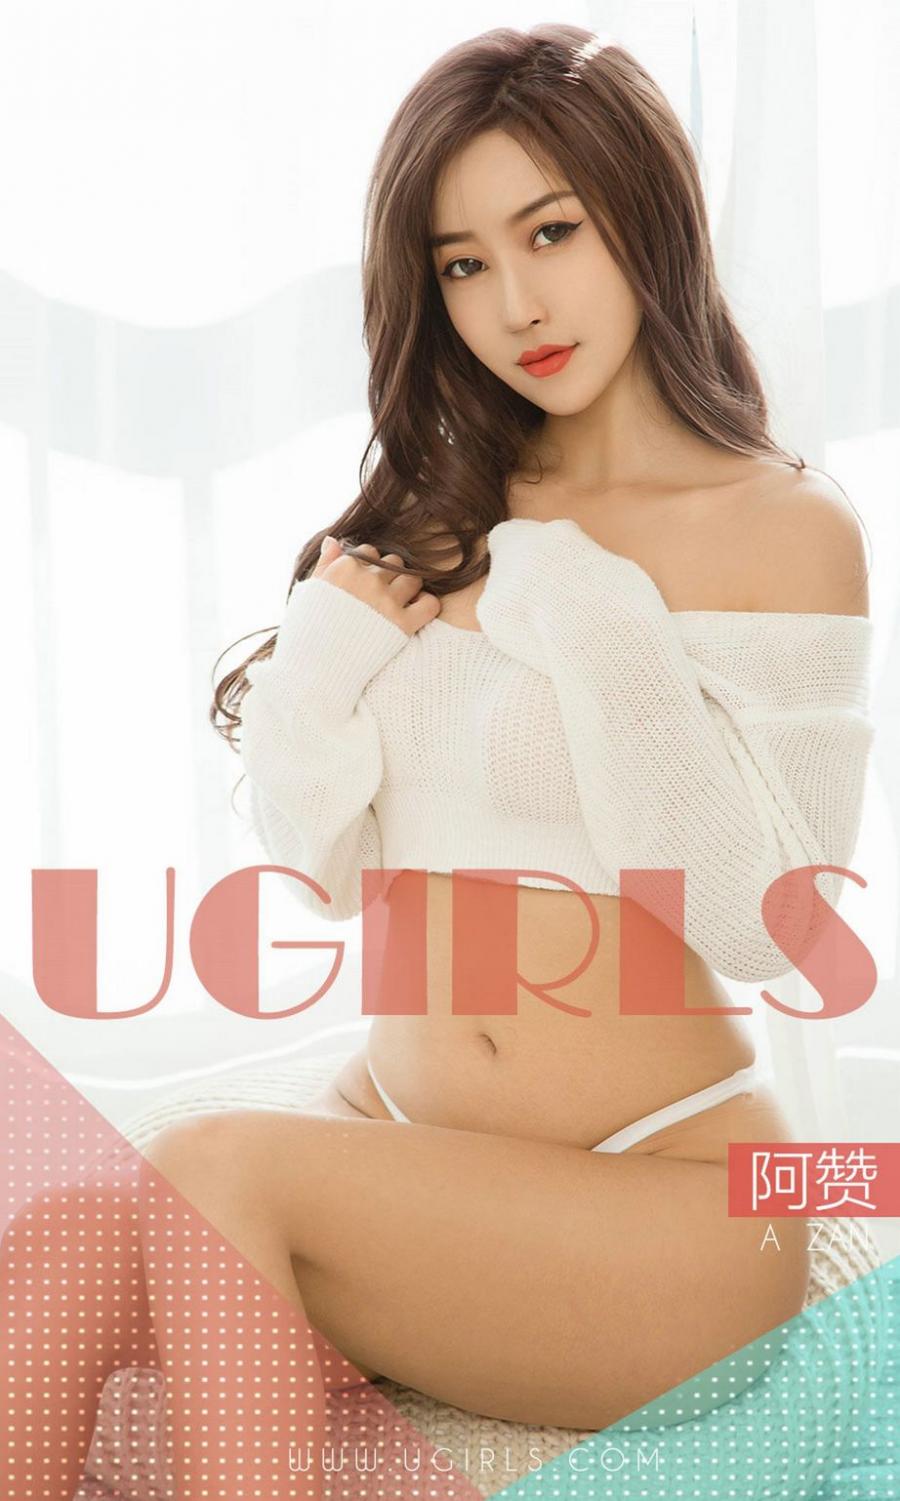 Ugirls App Vol. 1351 A Zhan